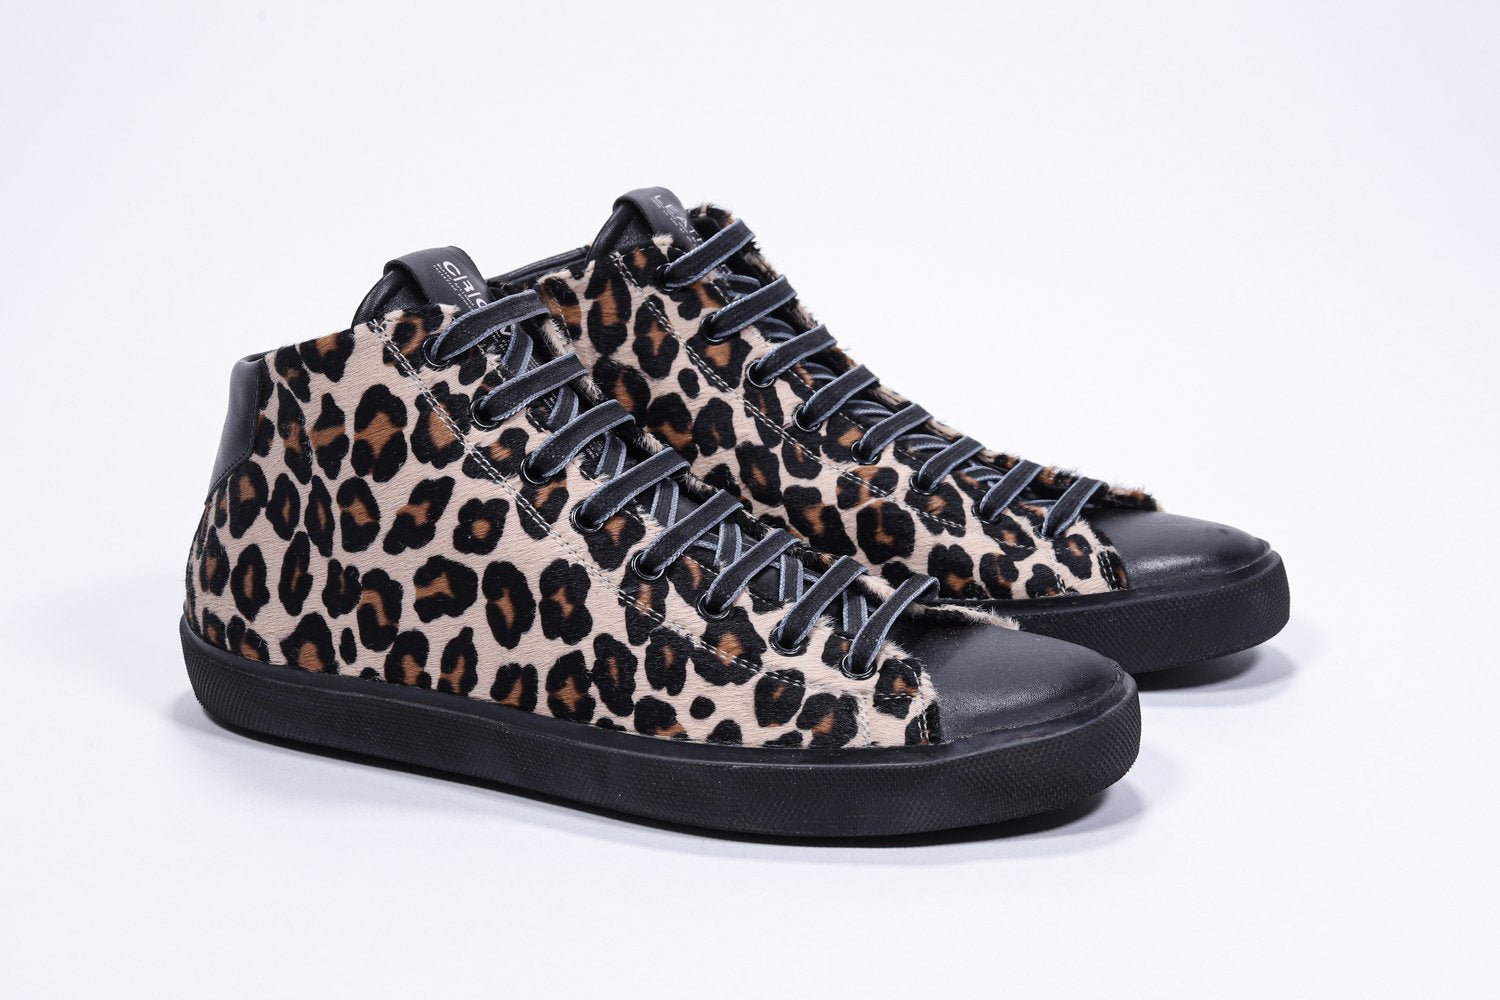 Vue de trois quarts avant d'un modèle intermédiaire sneaker à imprimé léopard, avec tige en cuir de veau pleine fleur, fermeture à glissière interne et semelle noire.